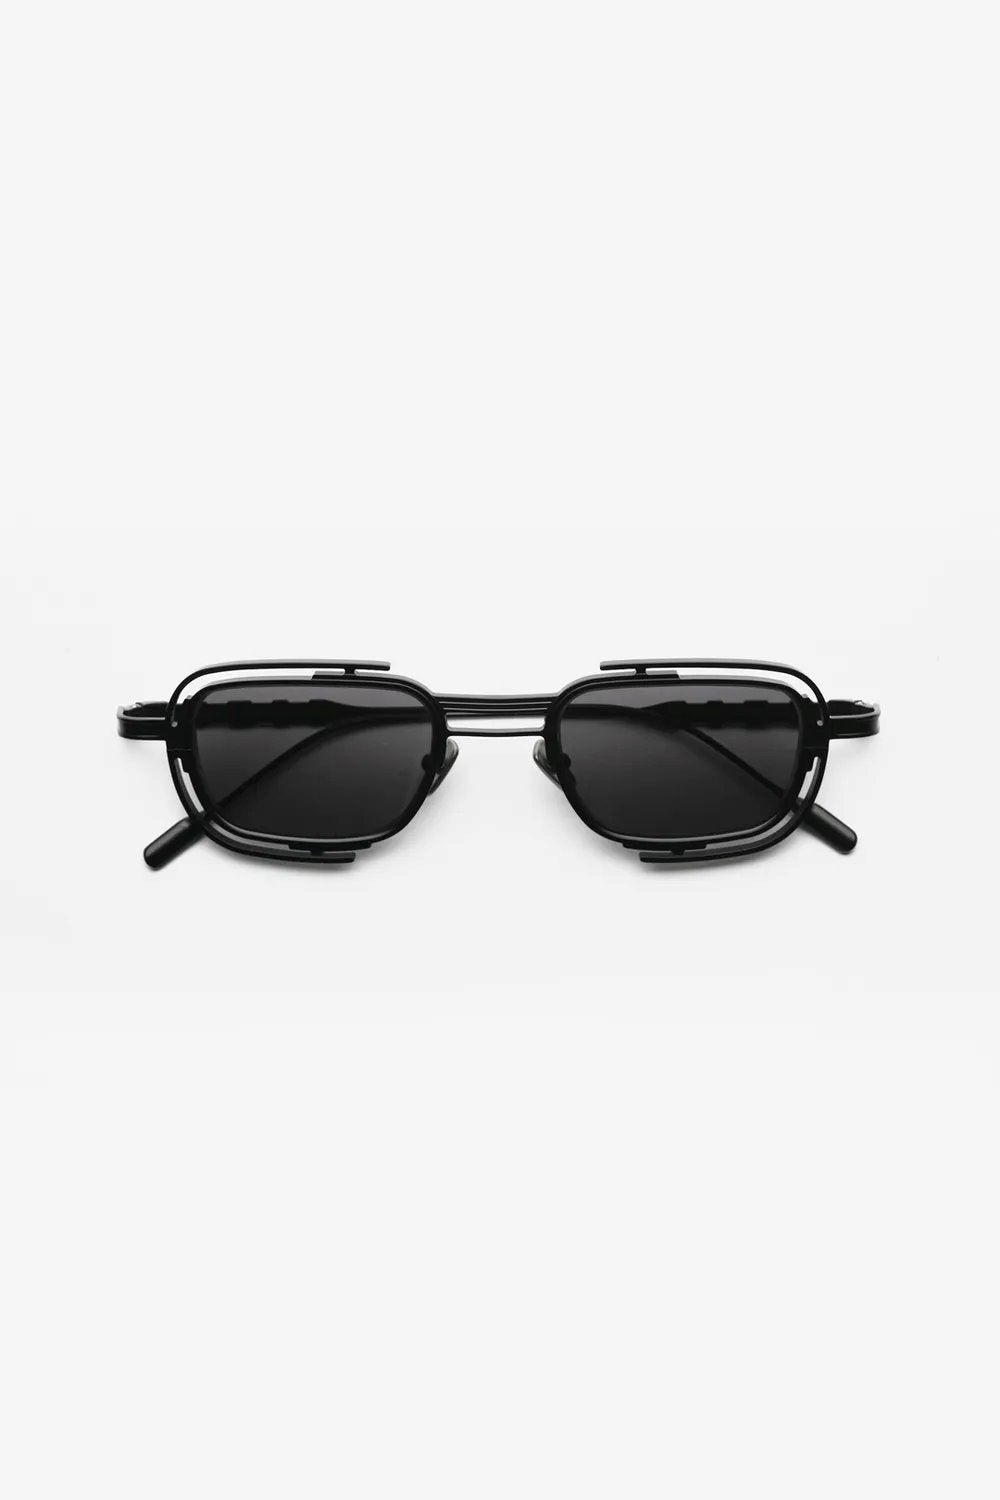 Capote - 226AC Sunglasses Capote Black ONES 